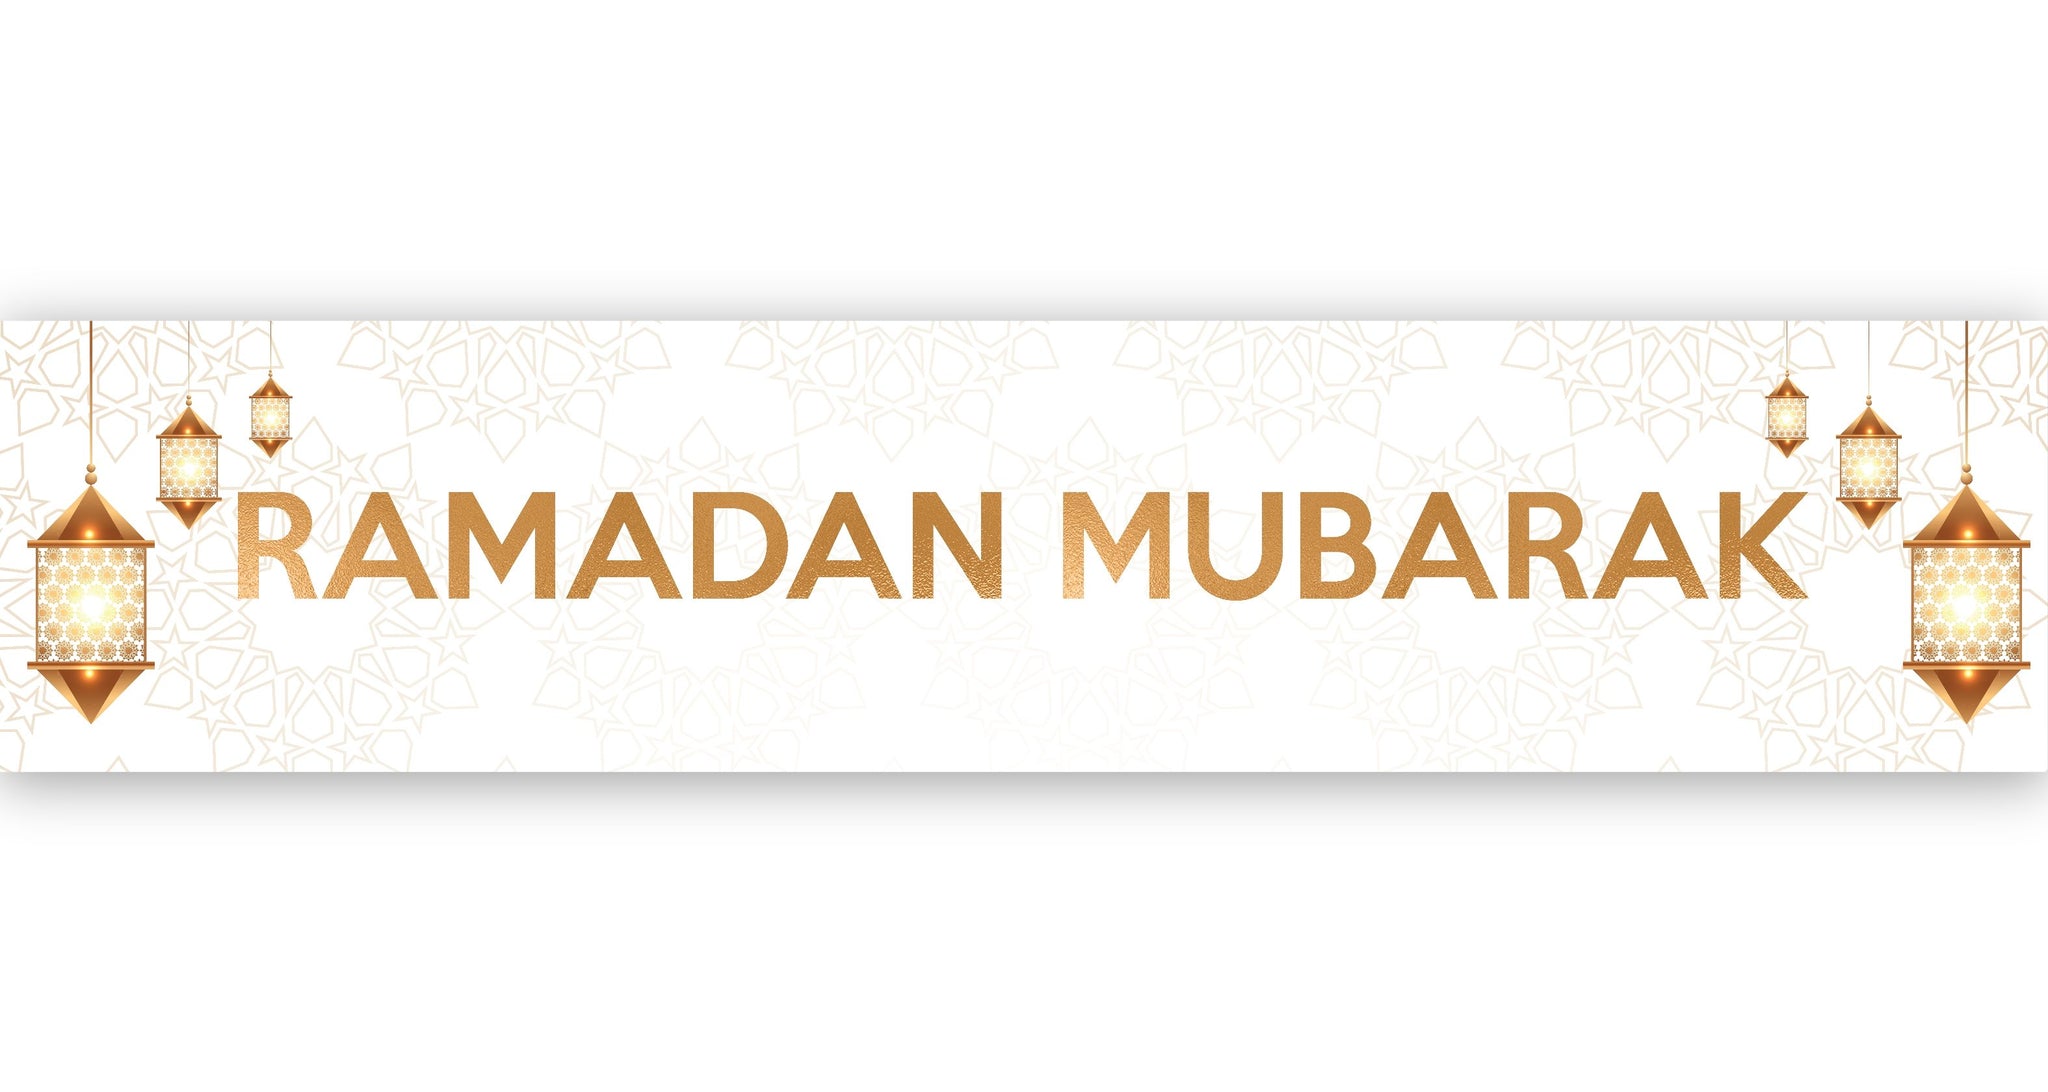 Ramadan Mubarak Banner - White & Gold Lanterns